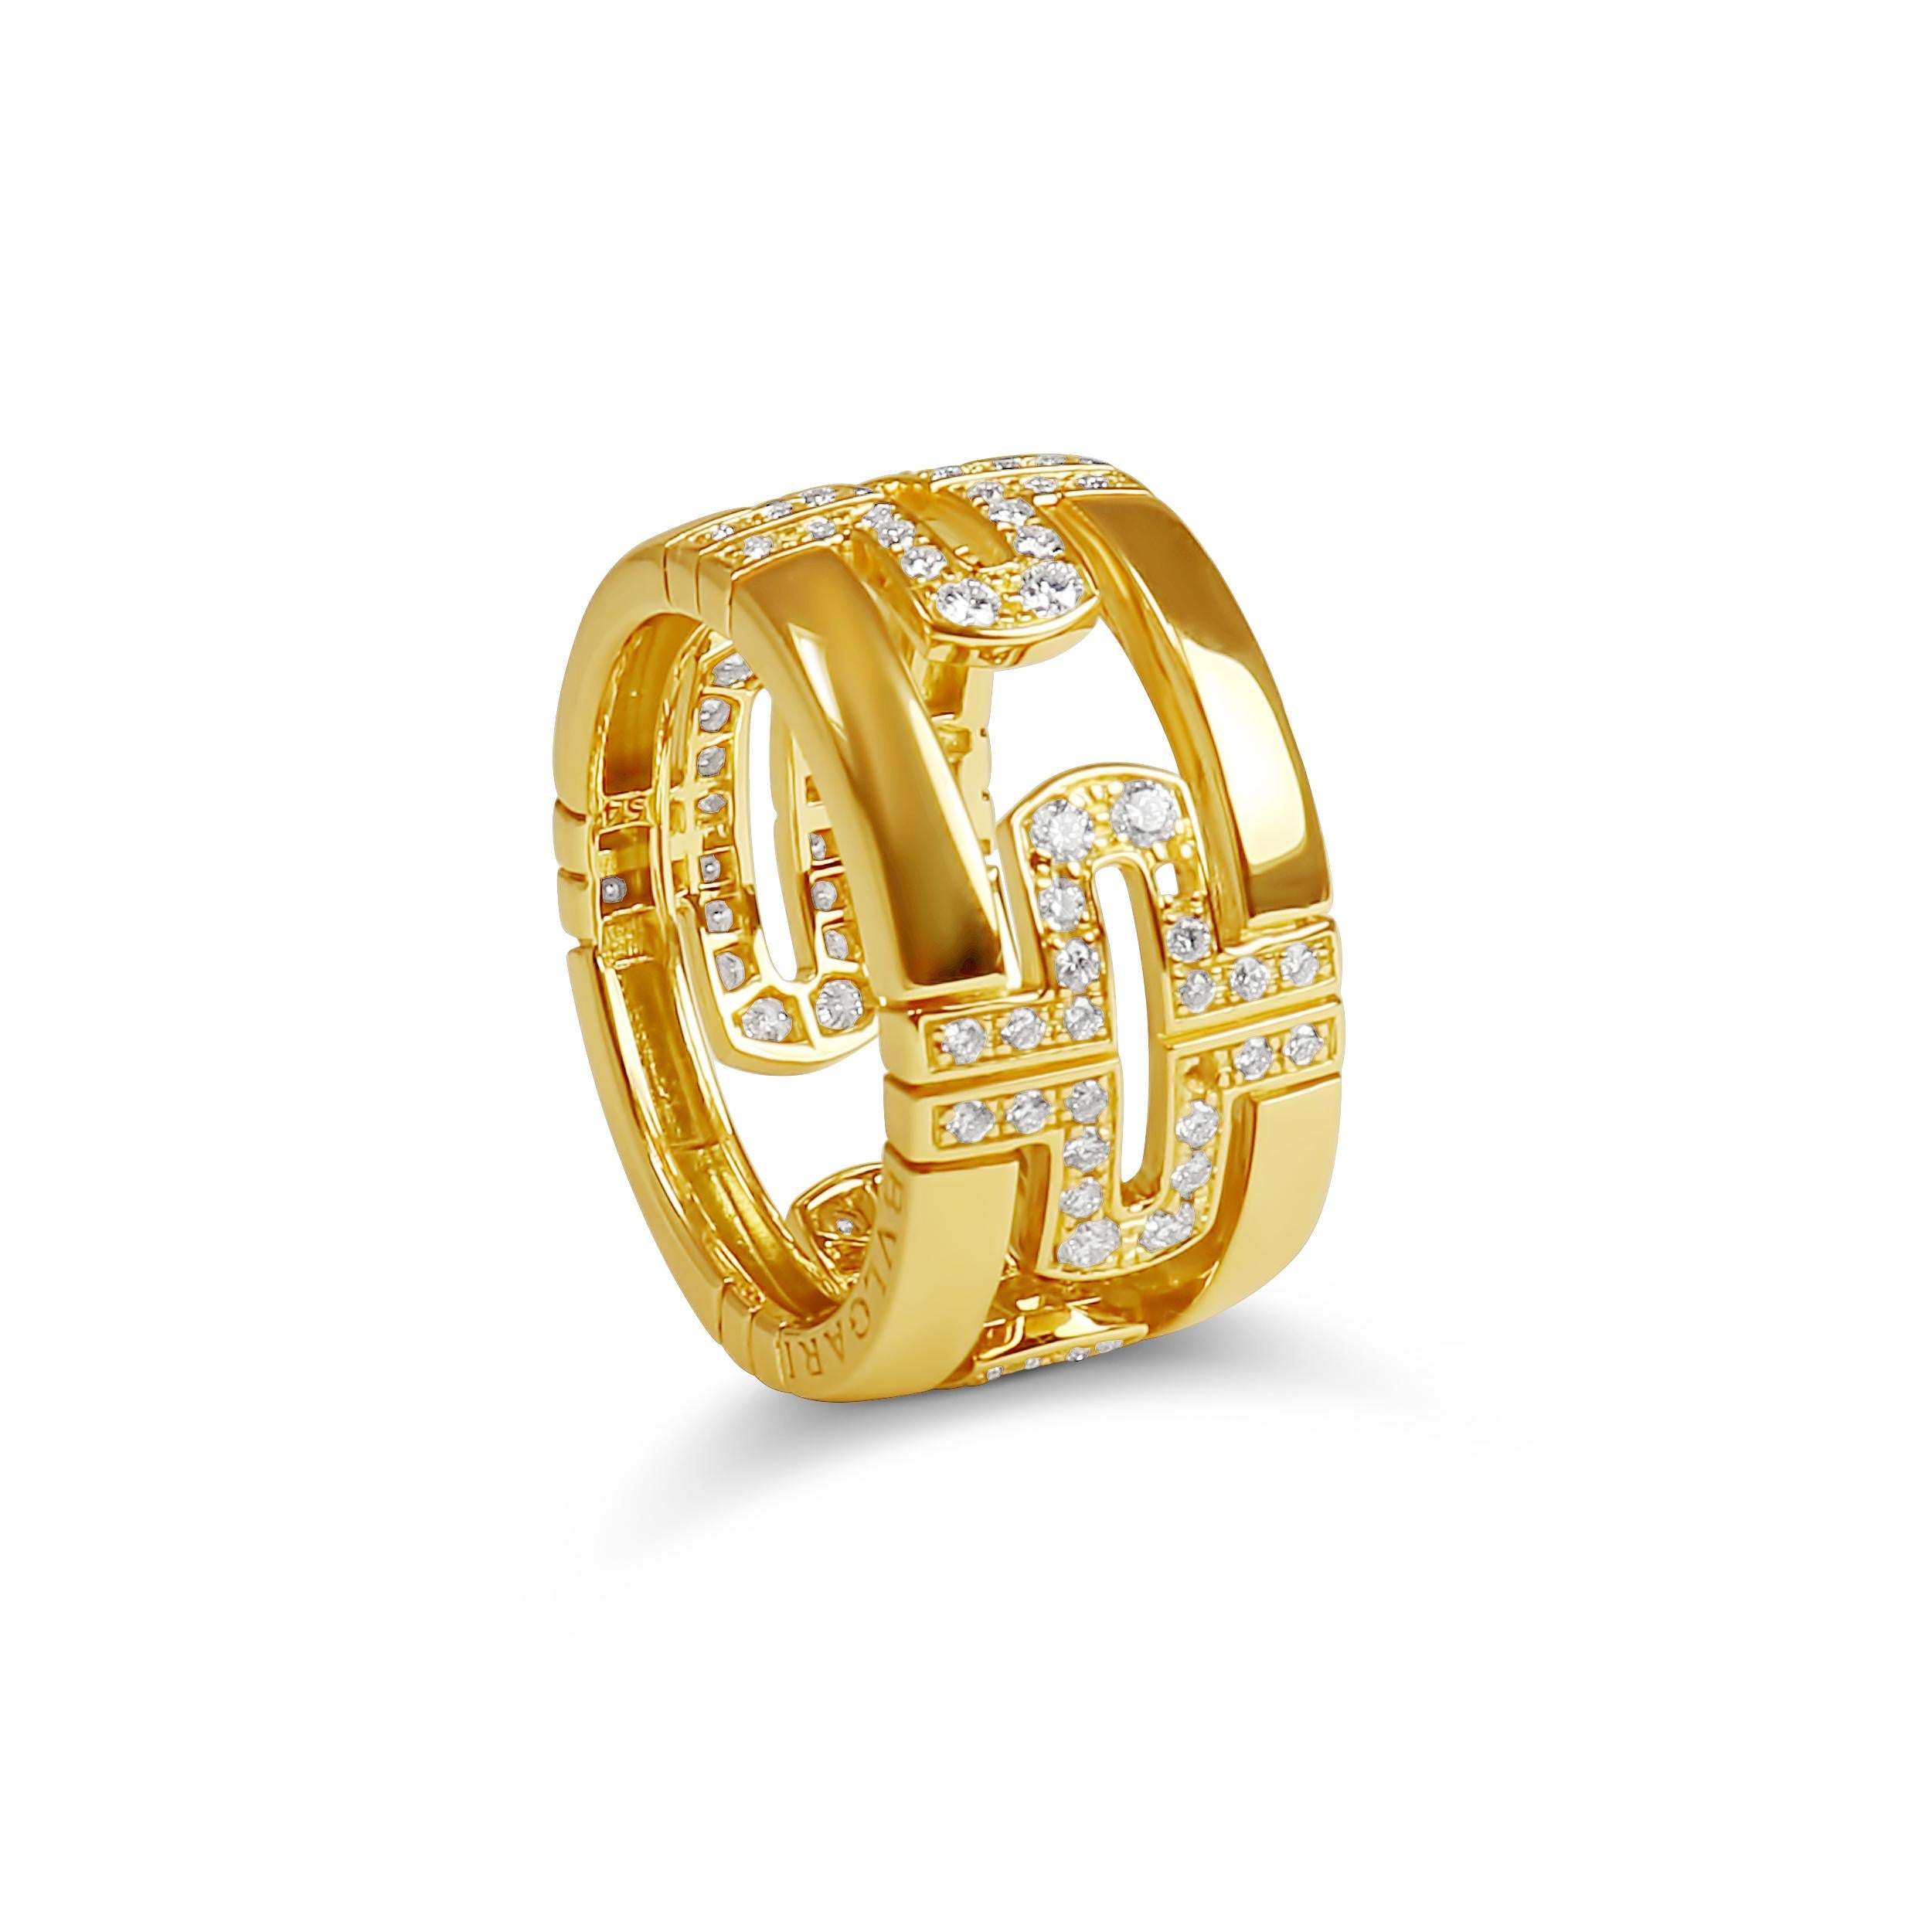 Women's Bvlgari 'Parentesi' Diamond and Yellow Gold Wide Band Ring